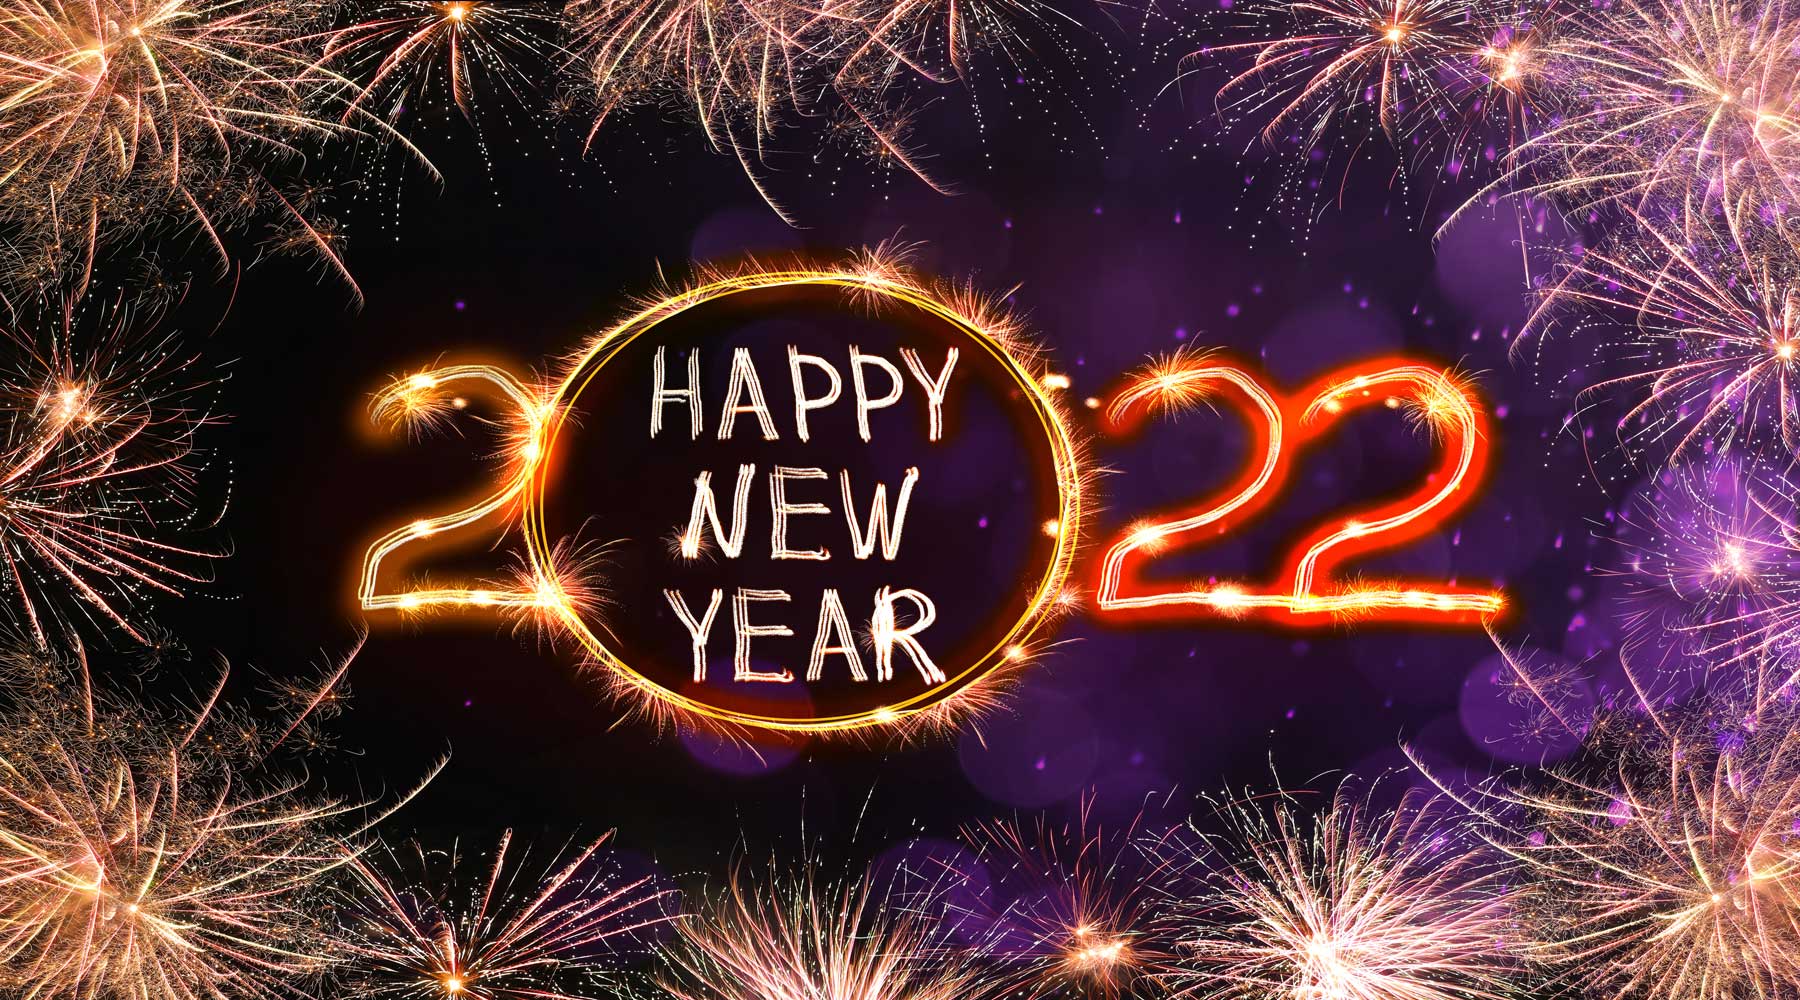 Hyvää uutta vuotta 2022!